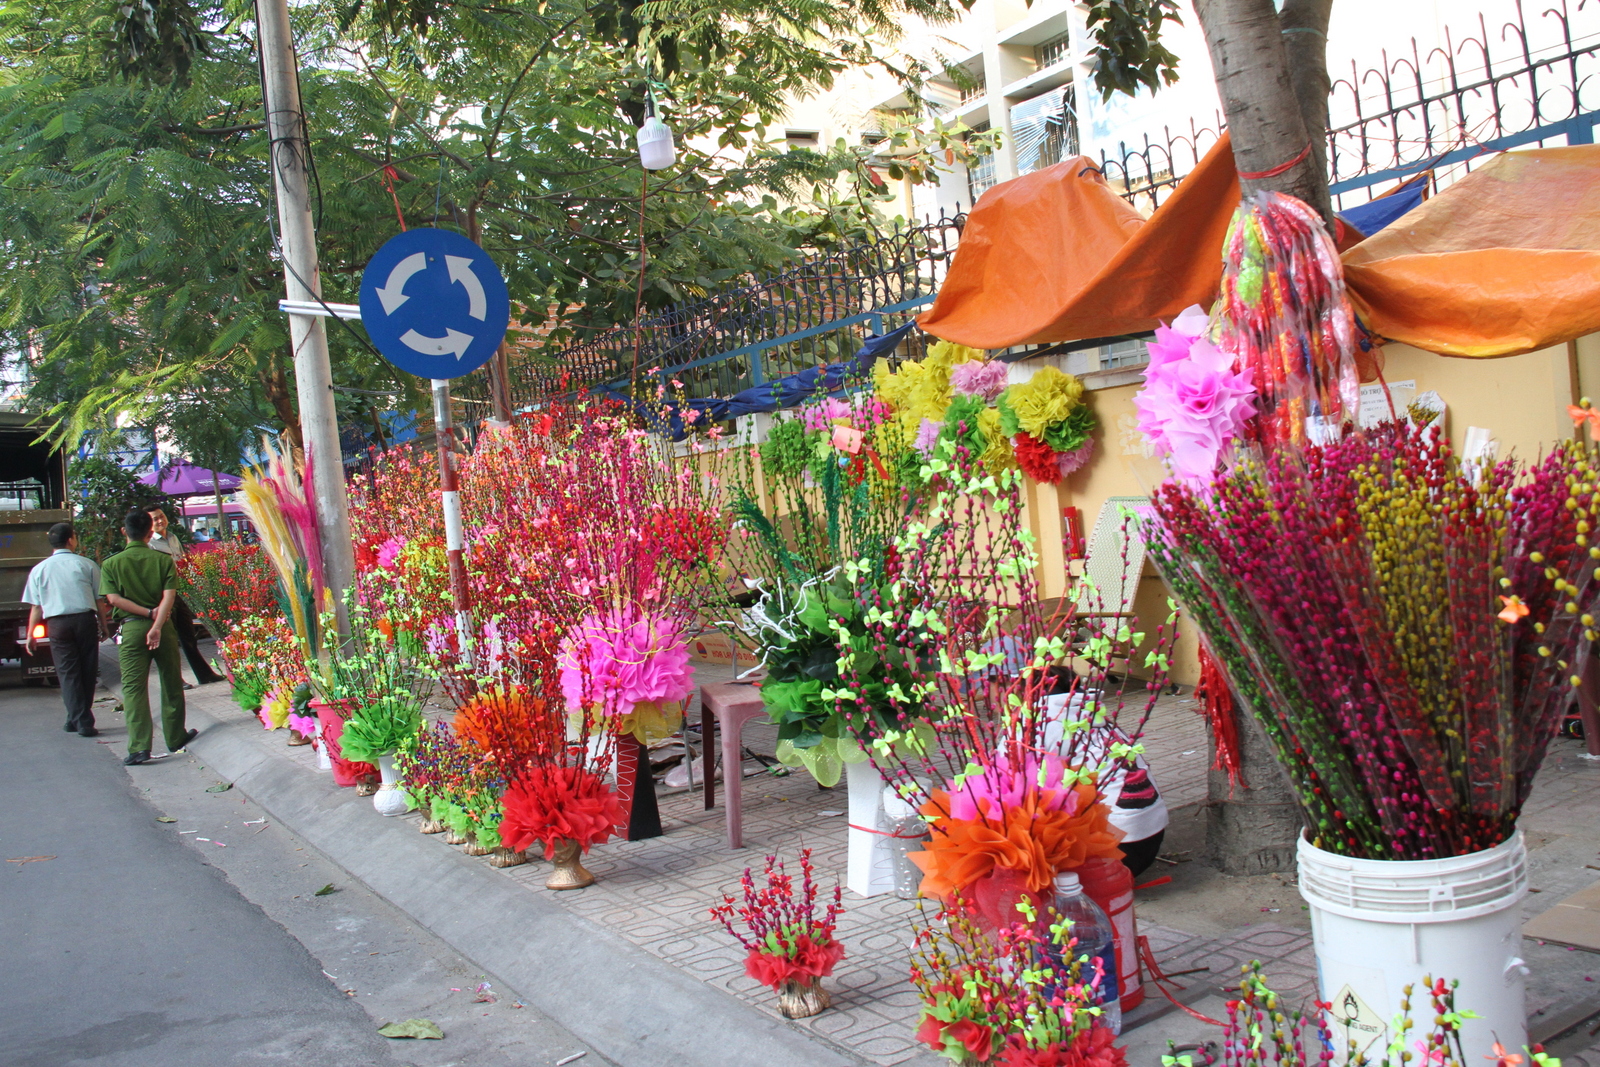 Cùng với hoa thật, hoa giả cũng được bày bán nhiều trong những ngày giáp Tết